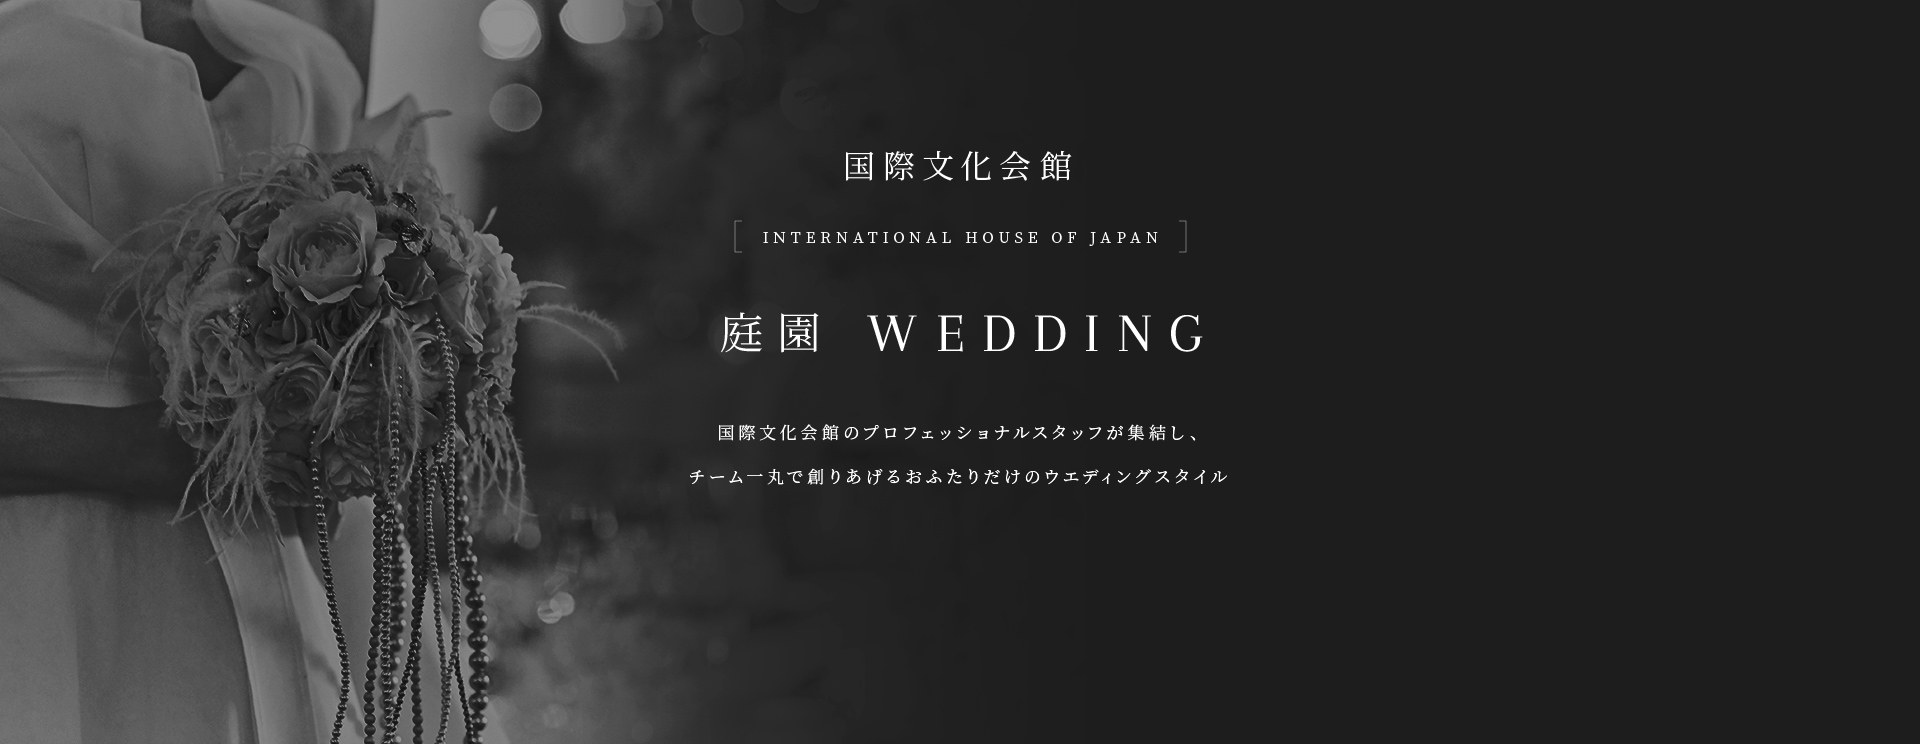 国際文化会館 INTERNATIONAL HOUSE OF JAPAN 庭園 WEDDING 国際文化会館のプロフェッショナルスタッフが集結し、チーム一丸で創りあげるおふたりだけのウエディングスタイル